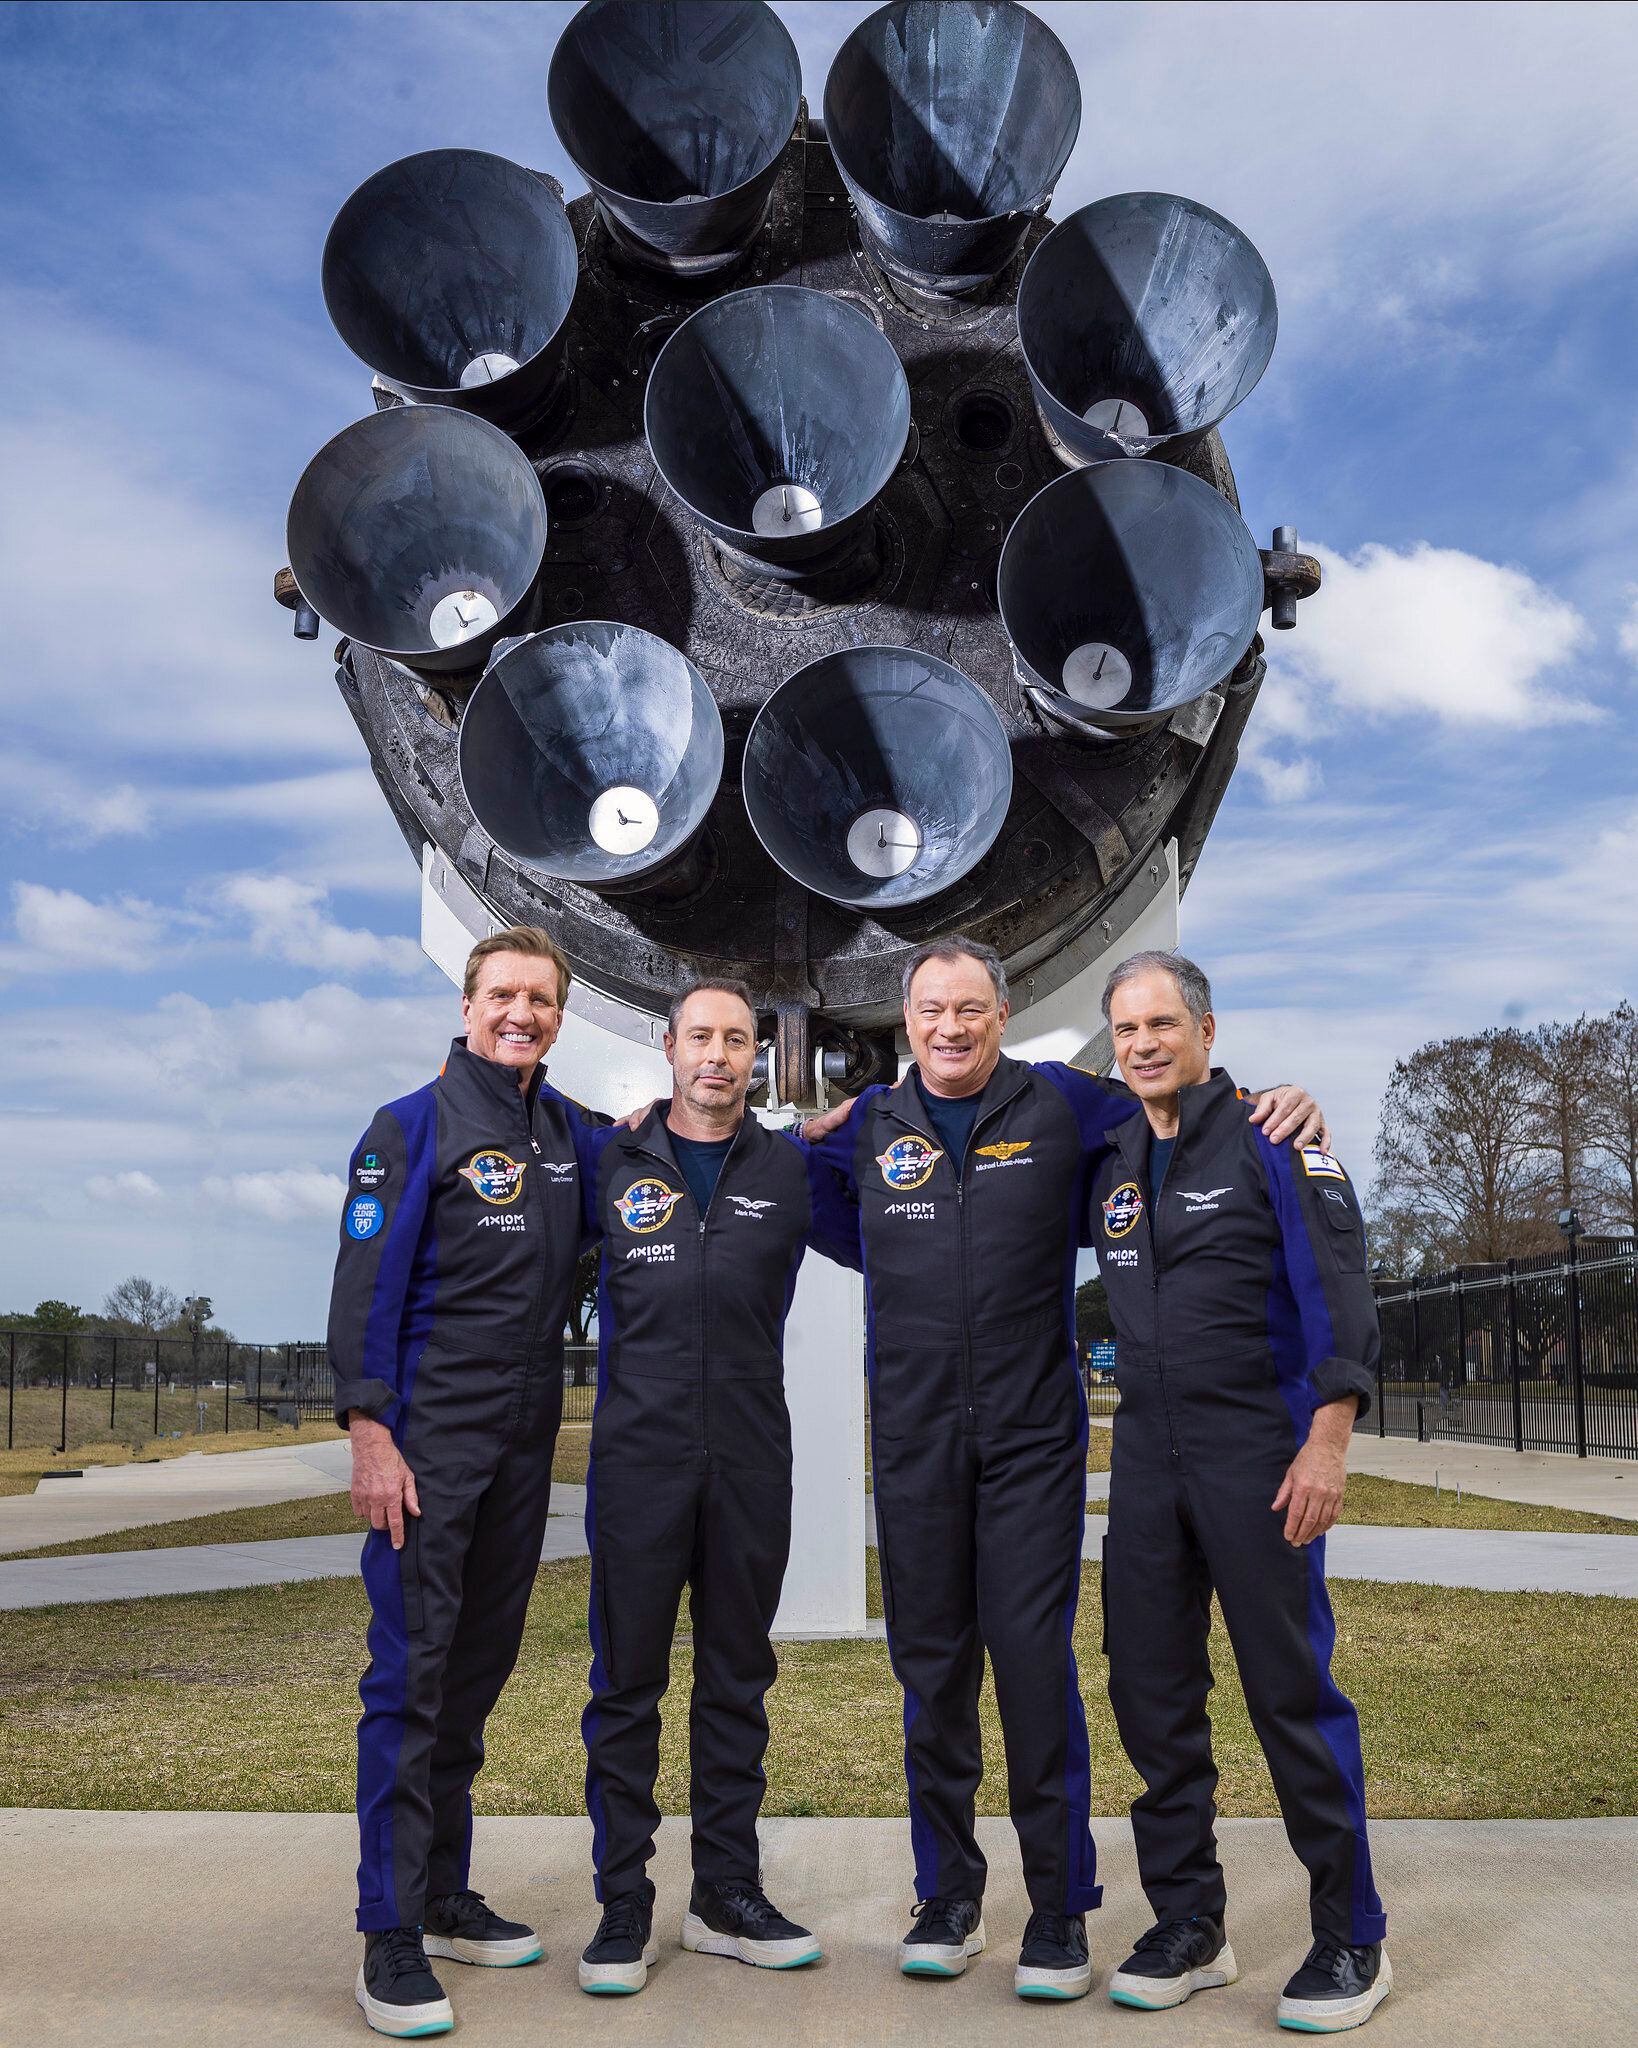 Fotografía cedida por Axiom Space donde aparece la tripulación de la Misión Axiom 1 (Ax-1): de izquierda a derecha, Larry Connor, Mark Pathy, el comandante Miguel López-Alegría, y Eytan Stibbe.